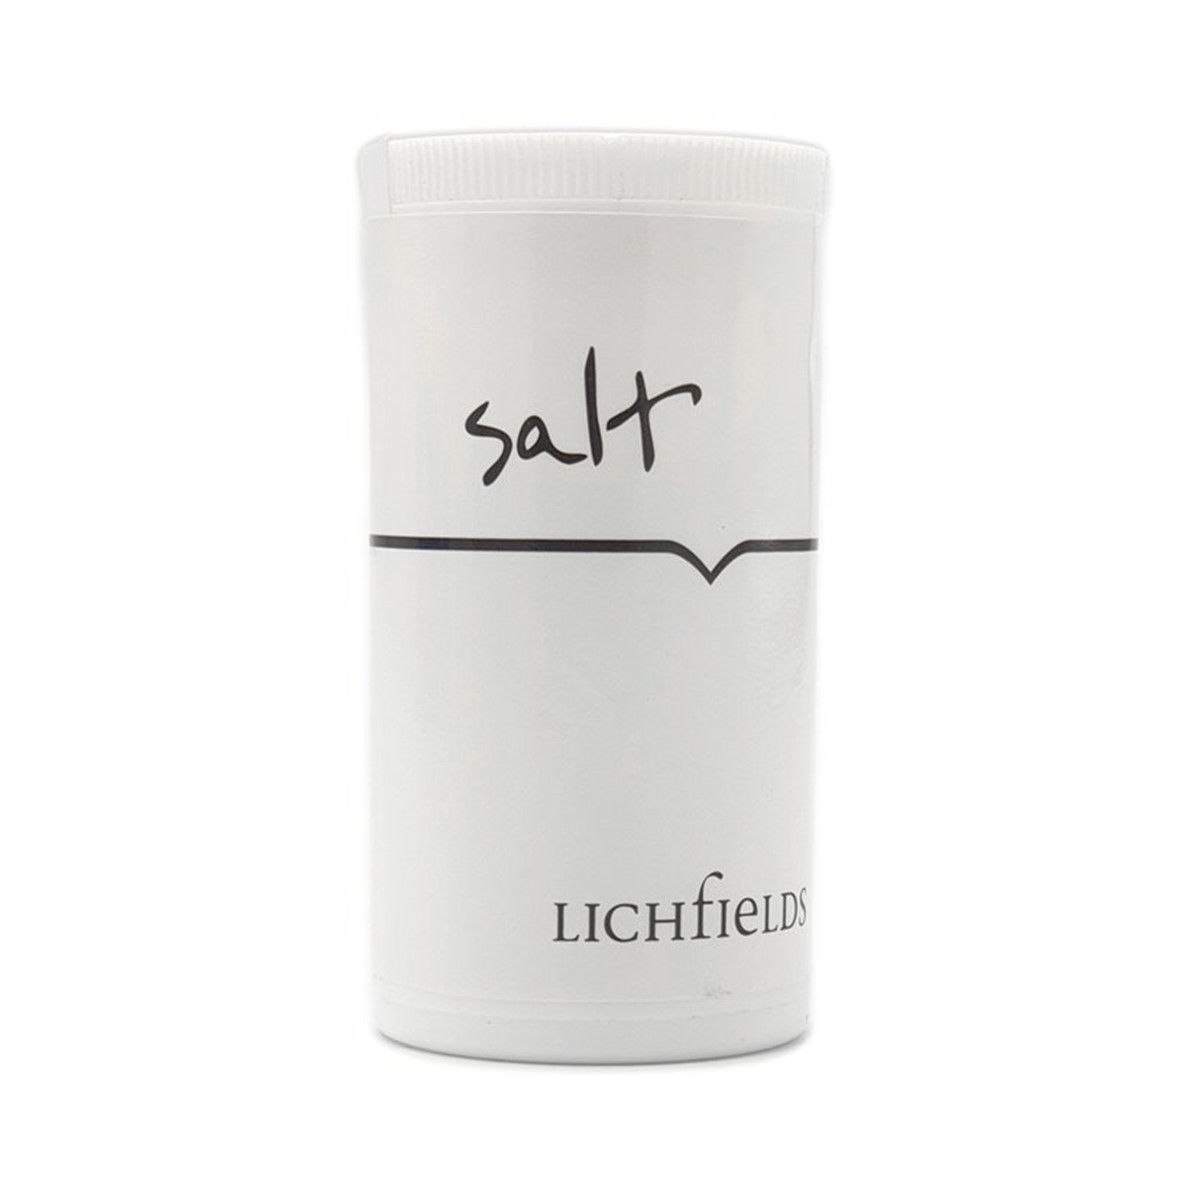 Lichfields Salt - 70g in disposable shaker